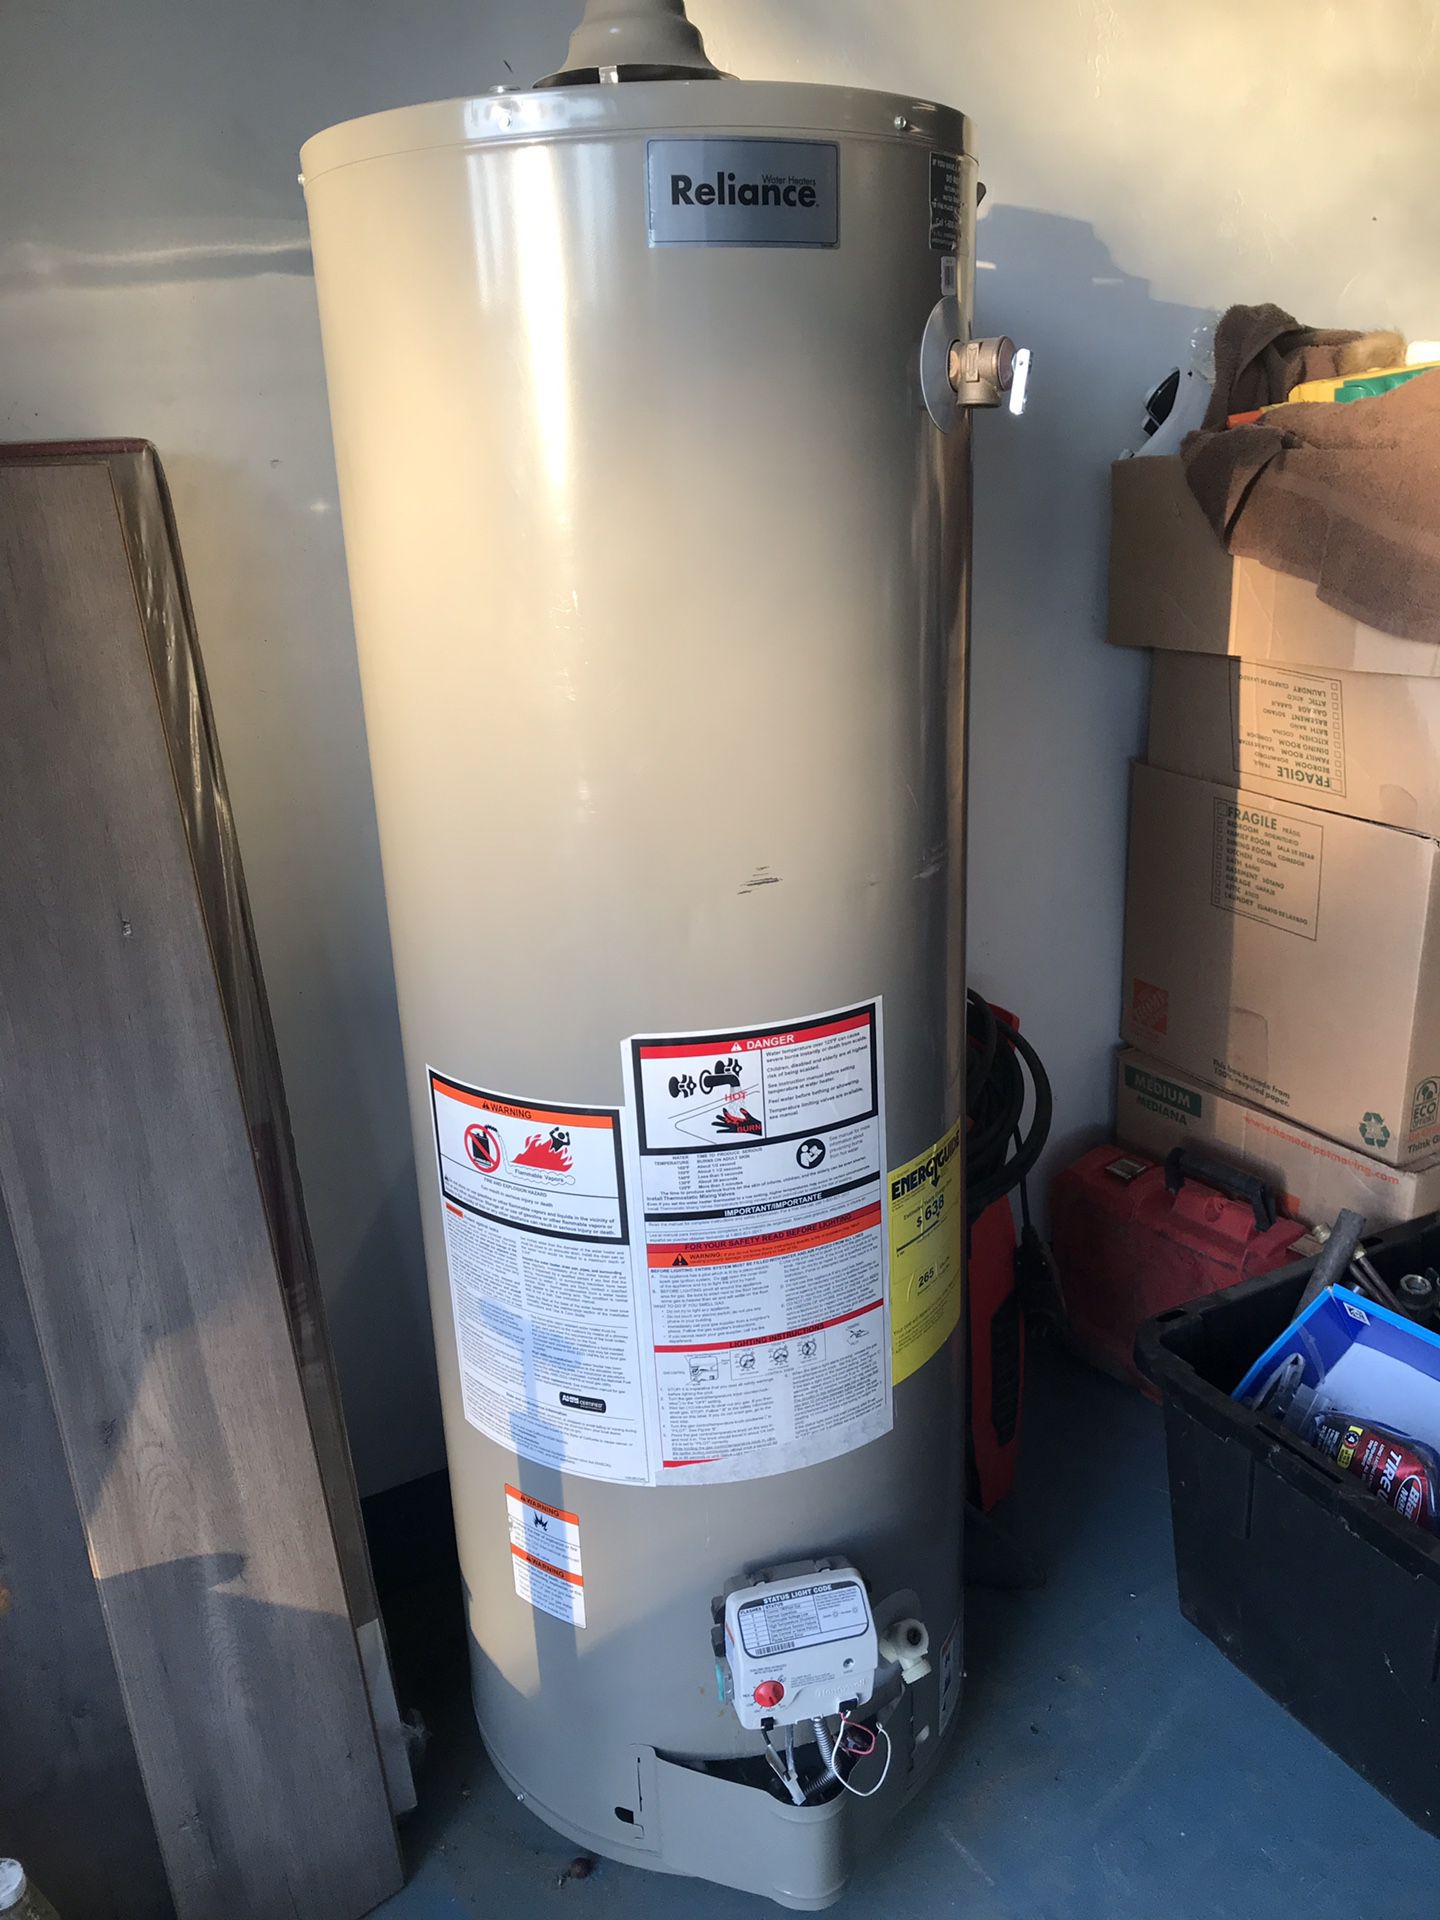 Brand new 40gal (propane) water heater